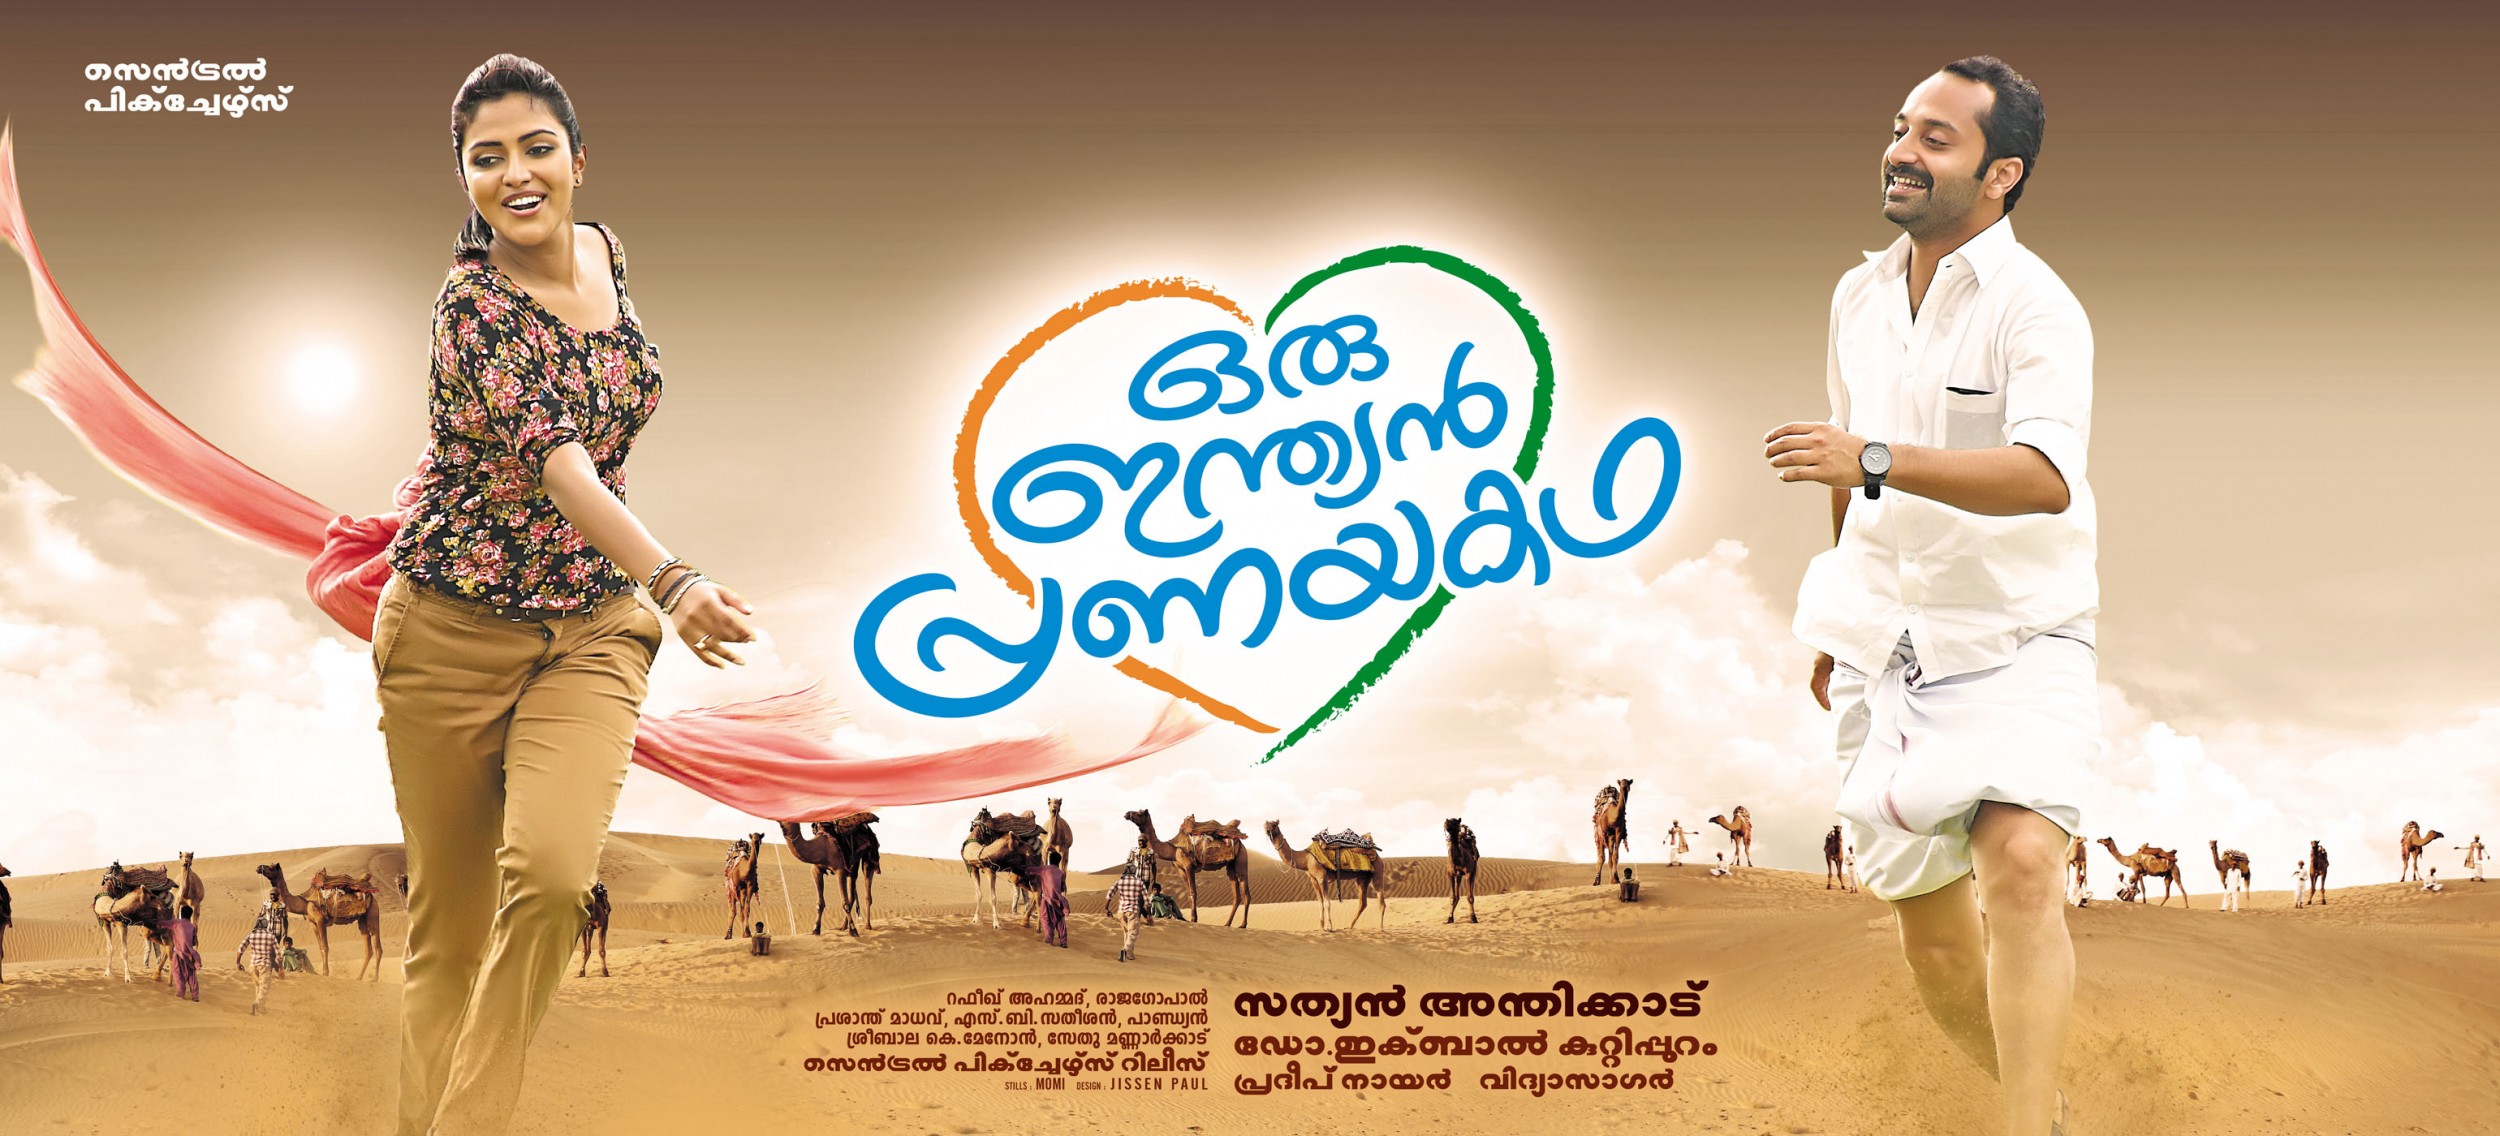 Mega Sized Movie Poster Image for Oru Indian Pranayakatha 